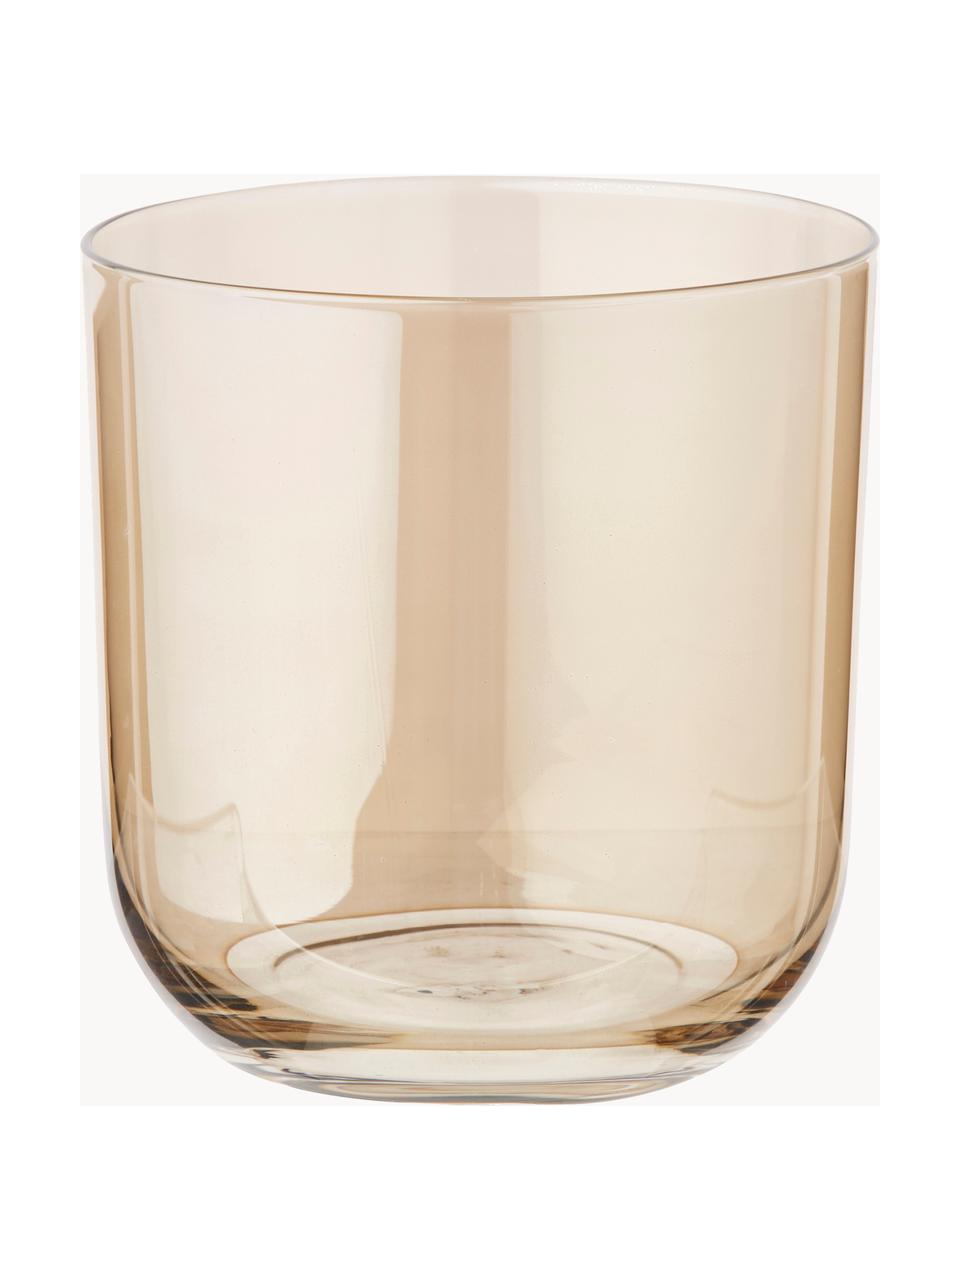 Handbeschilderde waterglazen Polka, 4-delig, Glas, Beigetinten, transparant, Ø 9 x H 9 cm, 250 ml